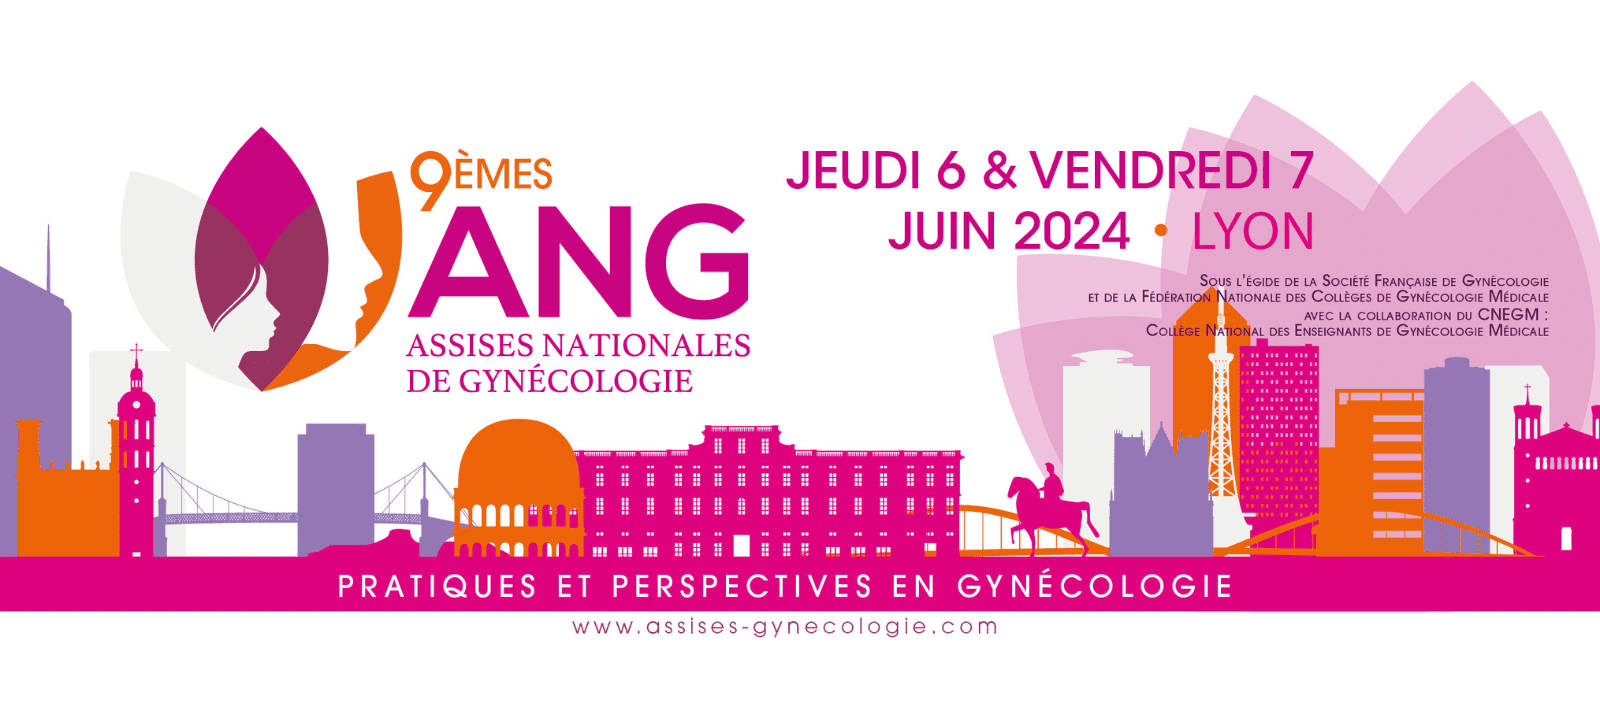 9èmes Assises Nationales de Gynécologie de Lyon